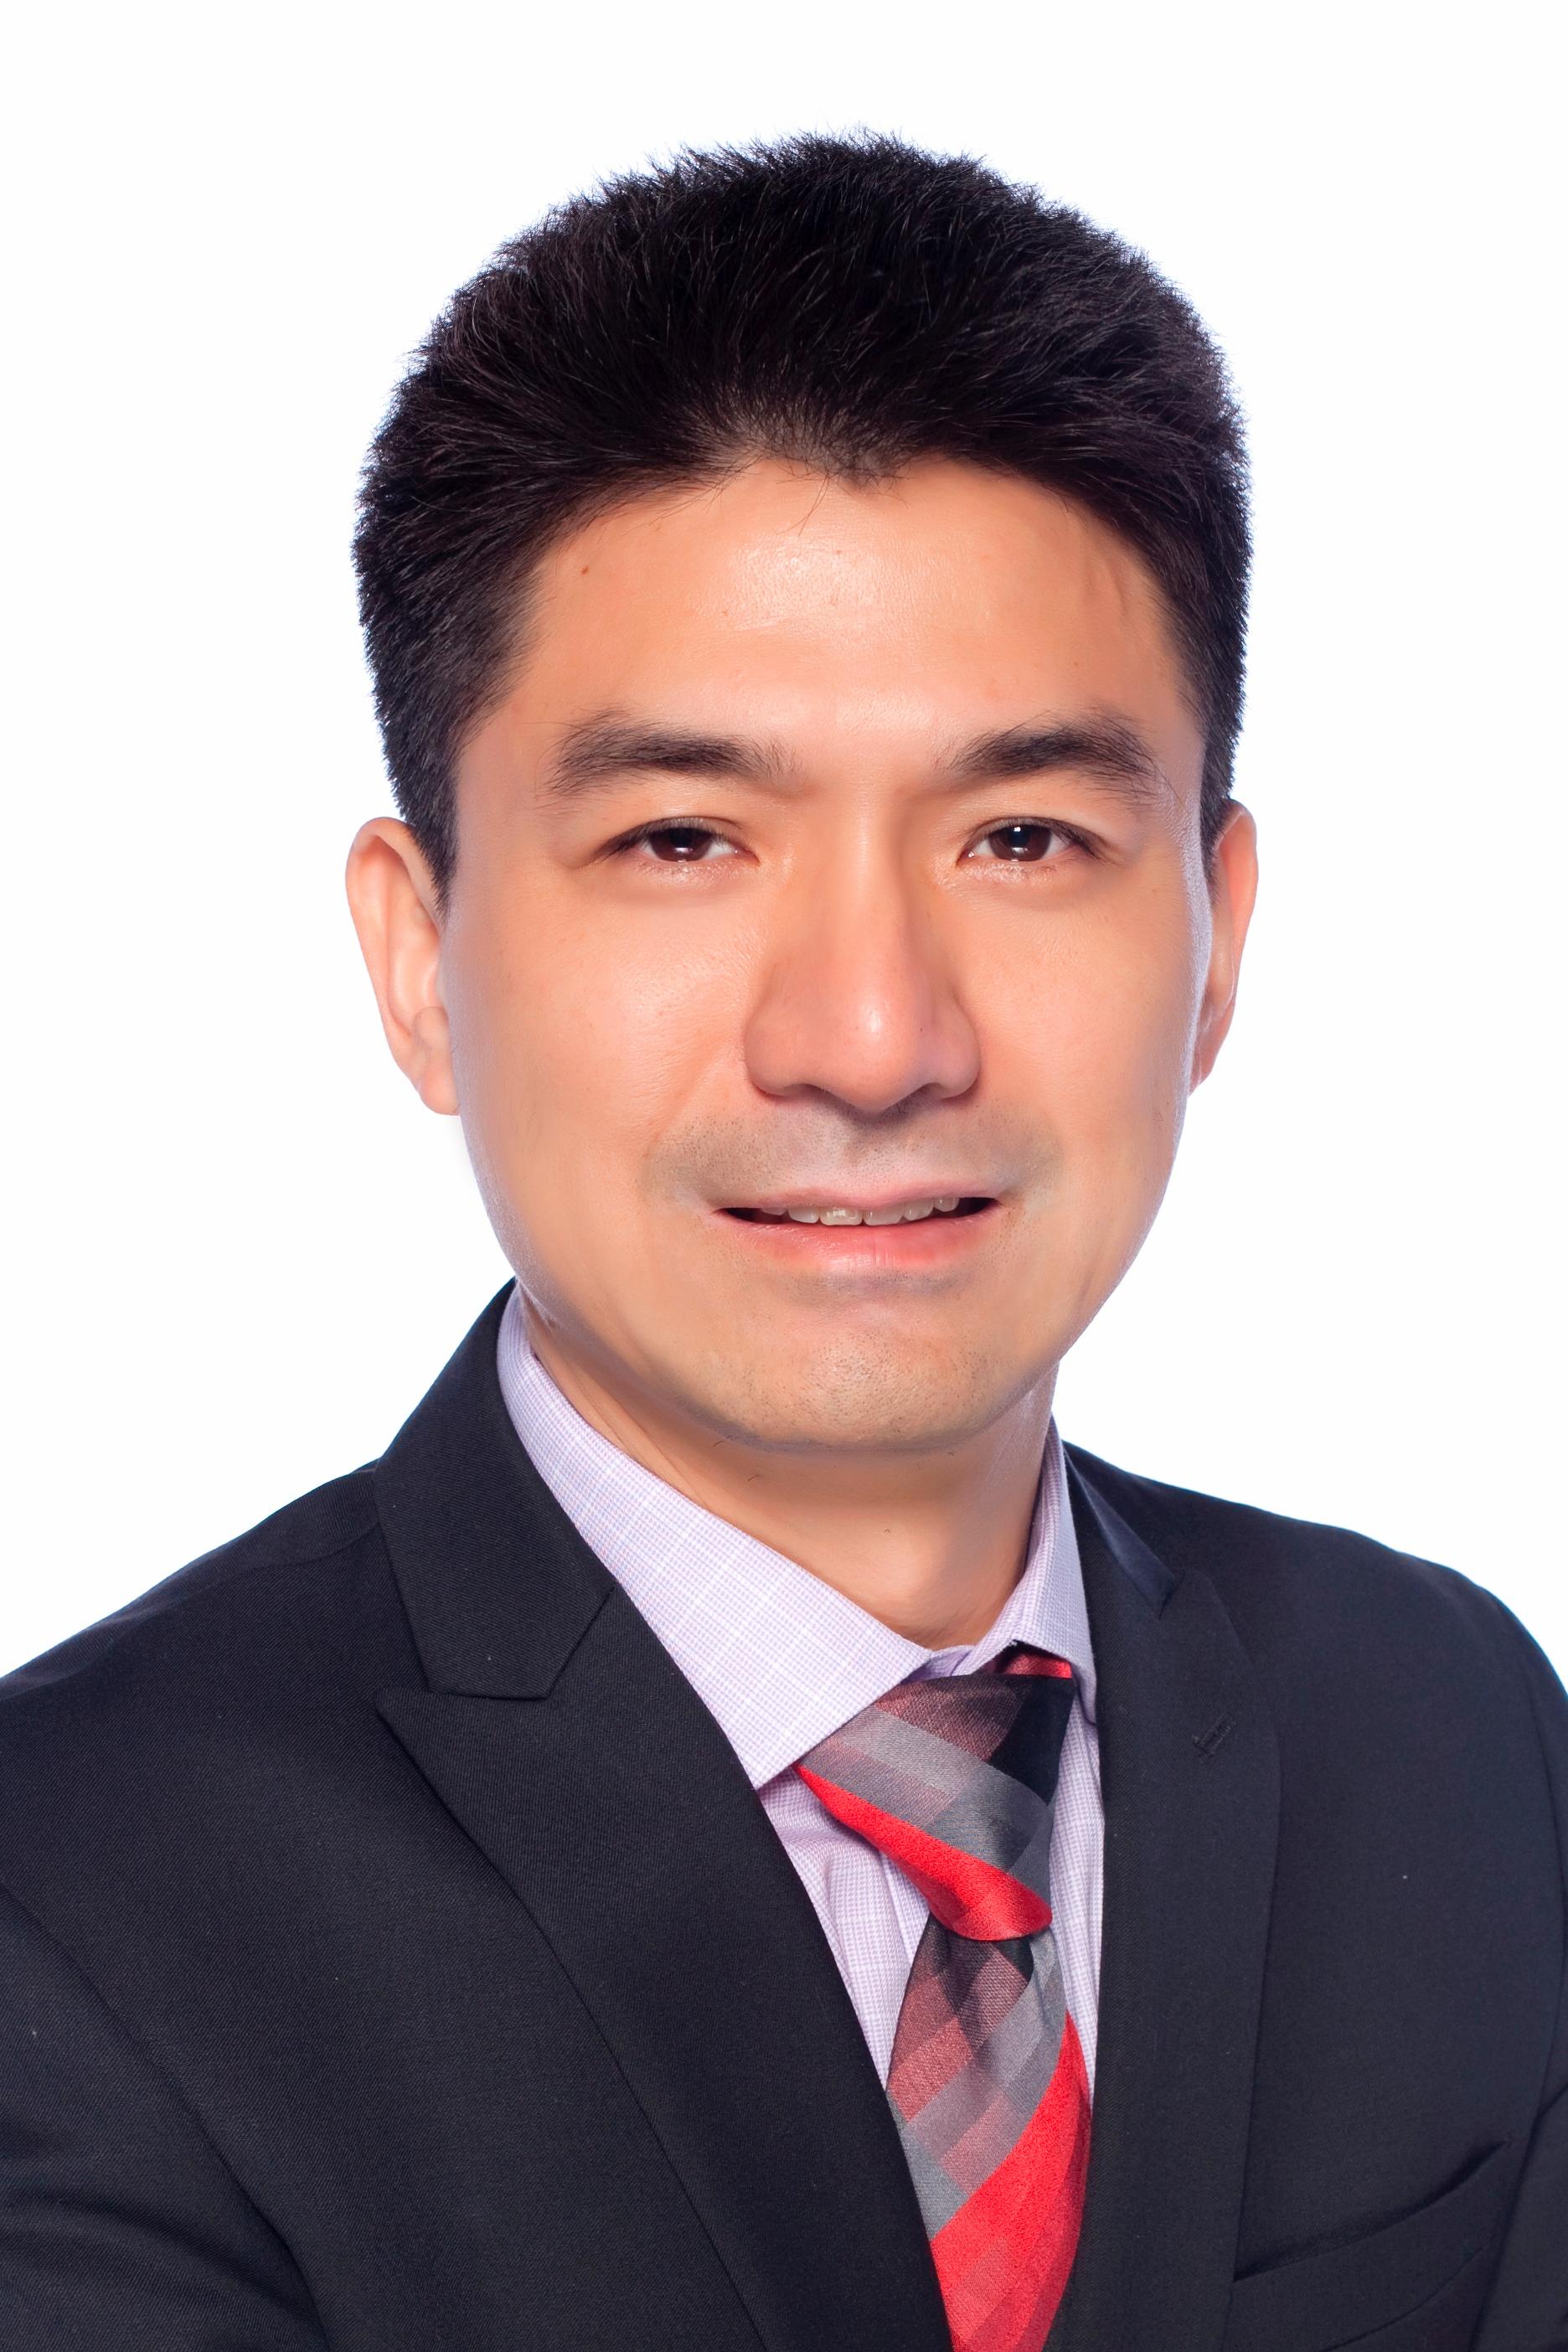 RYAN YUAN HONG Financial Professional & Insurance Agent